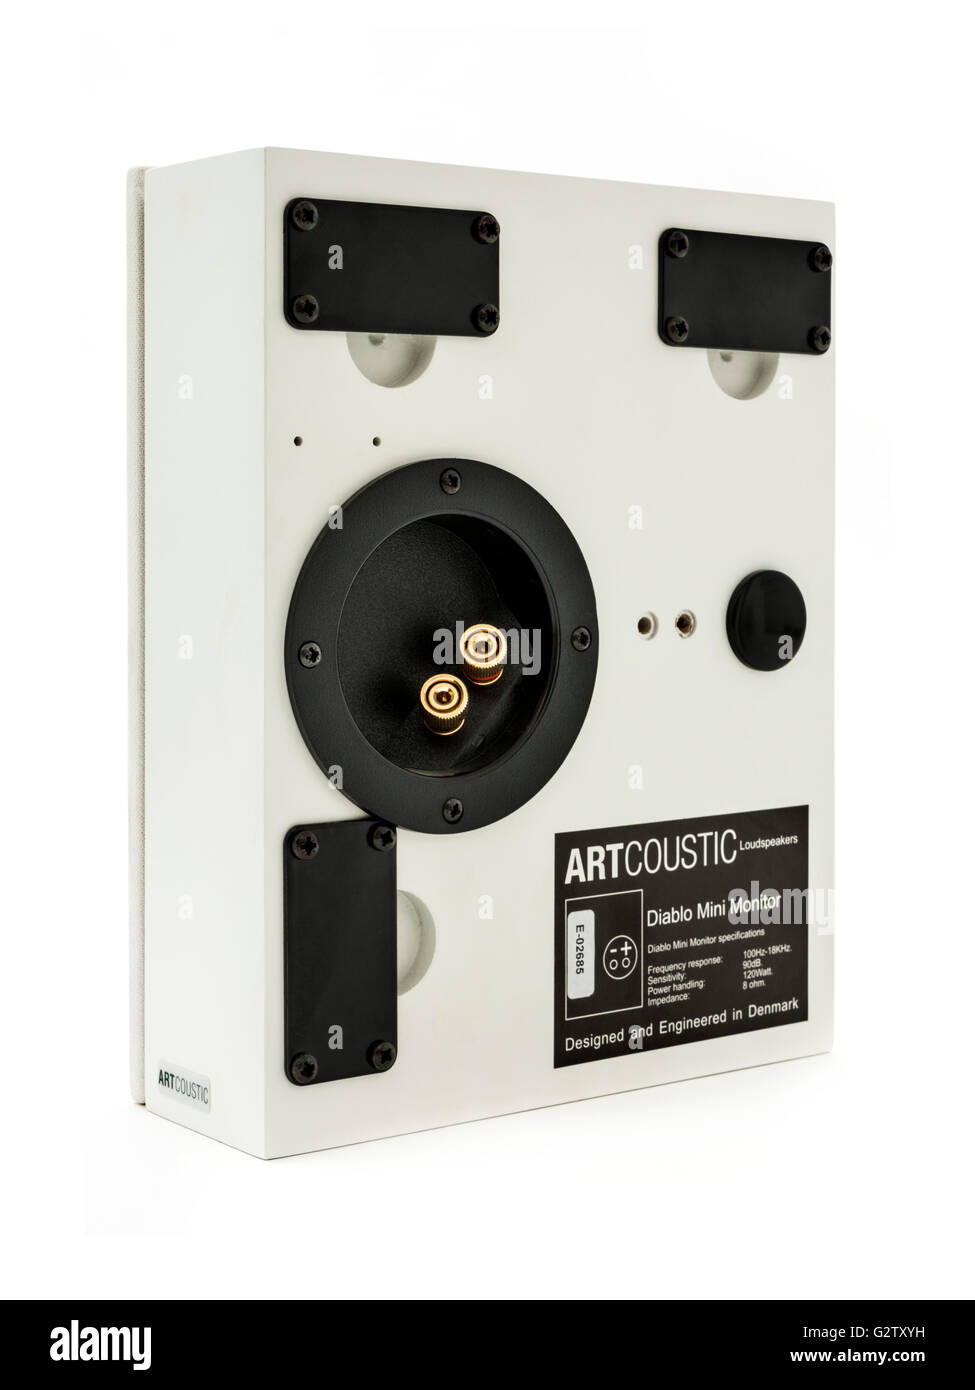 Artcoustic 'Diablo' moniteur Mini haut-parleur, idéal pour un home cinéma surround sound système audio. Banque D'Images